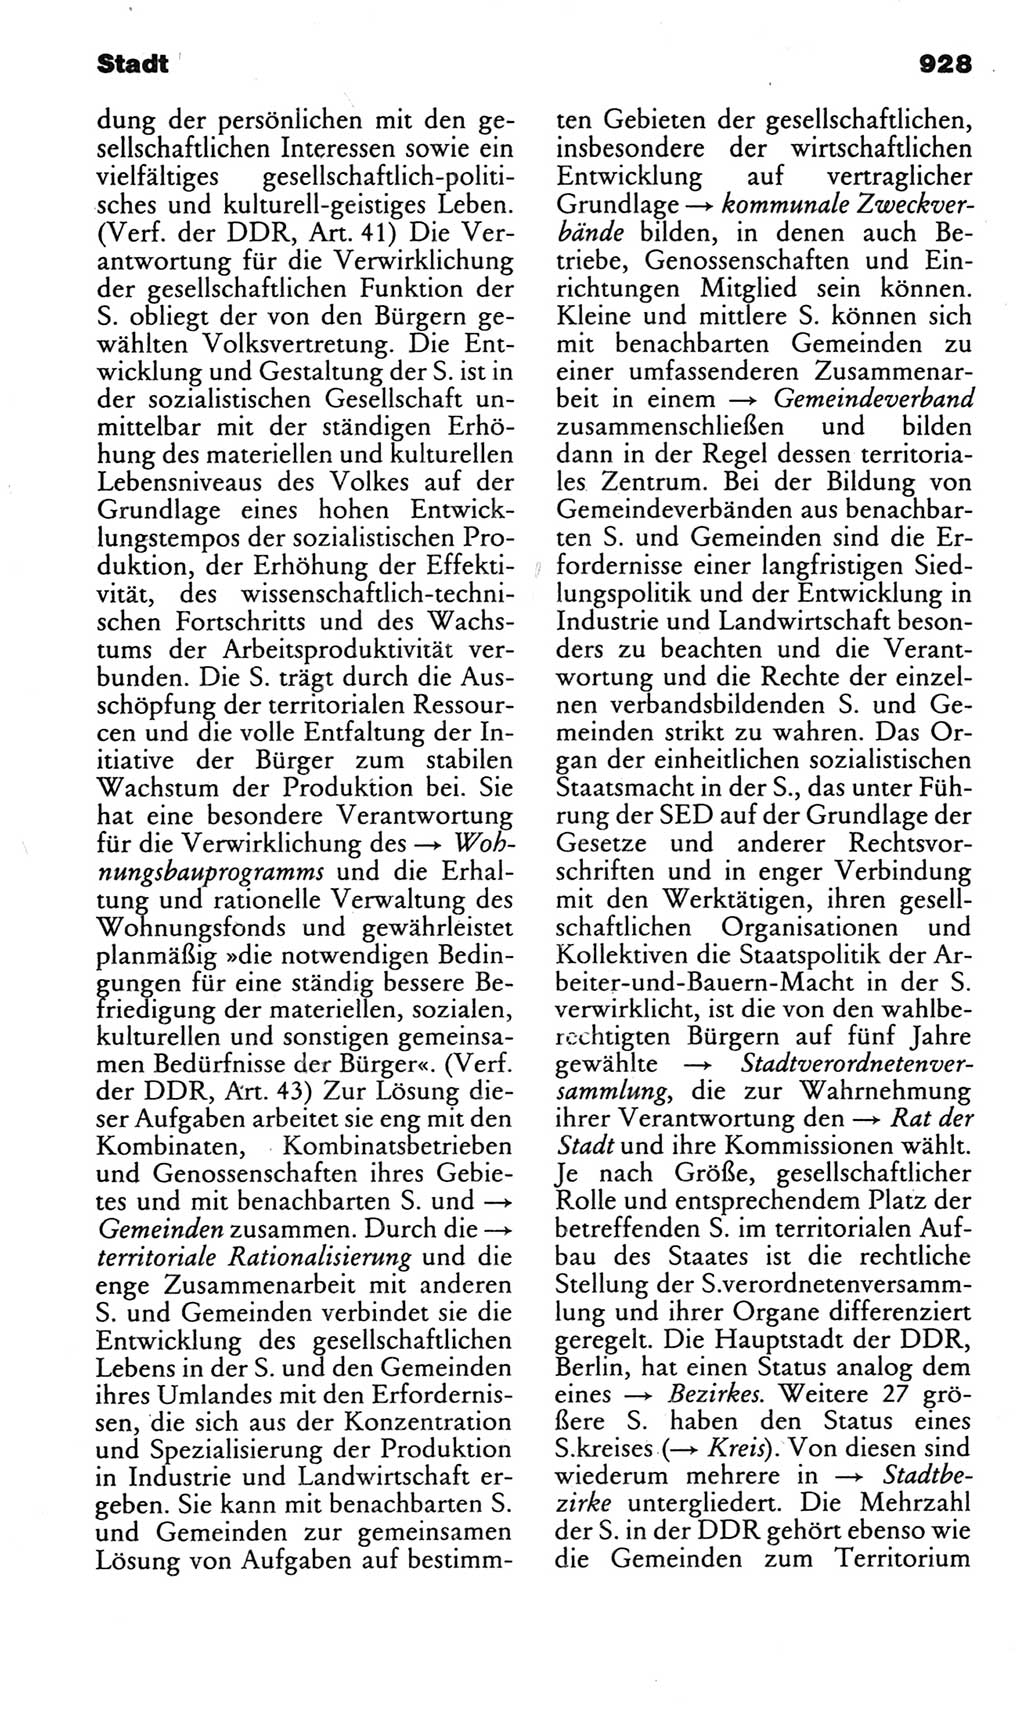 Kleines politisches Wörterbuch [Deutsche Demokratische Republik (DDR)] 1983, Seite 928 (Kl. pol. Wb. DDR 1983, S. 928)